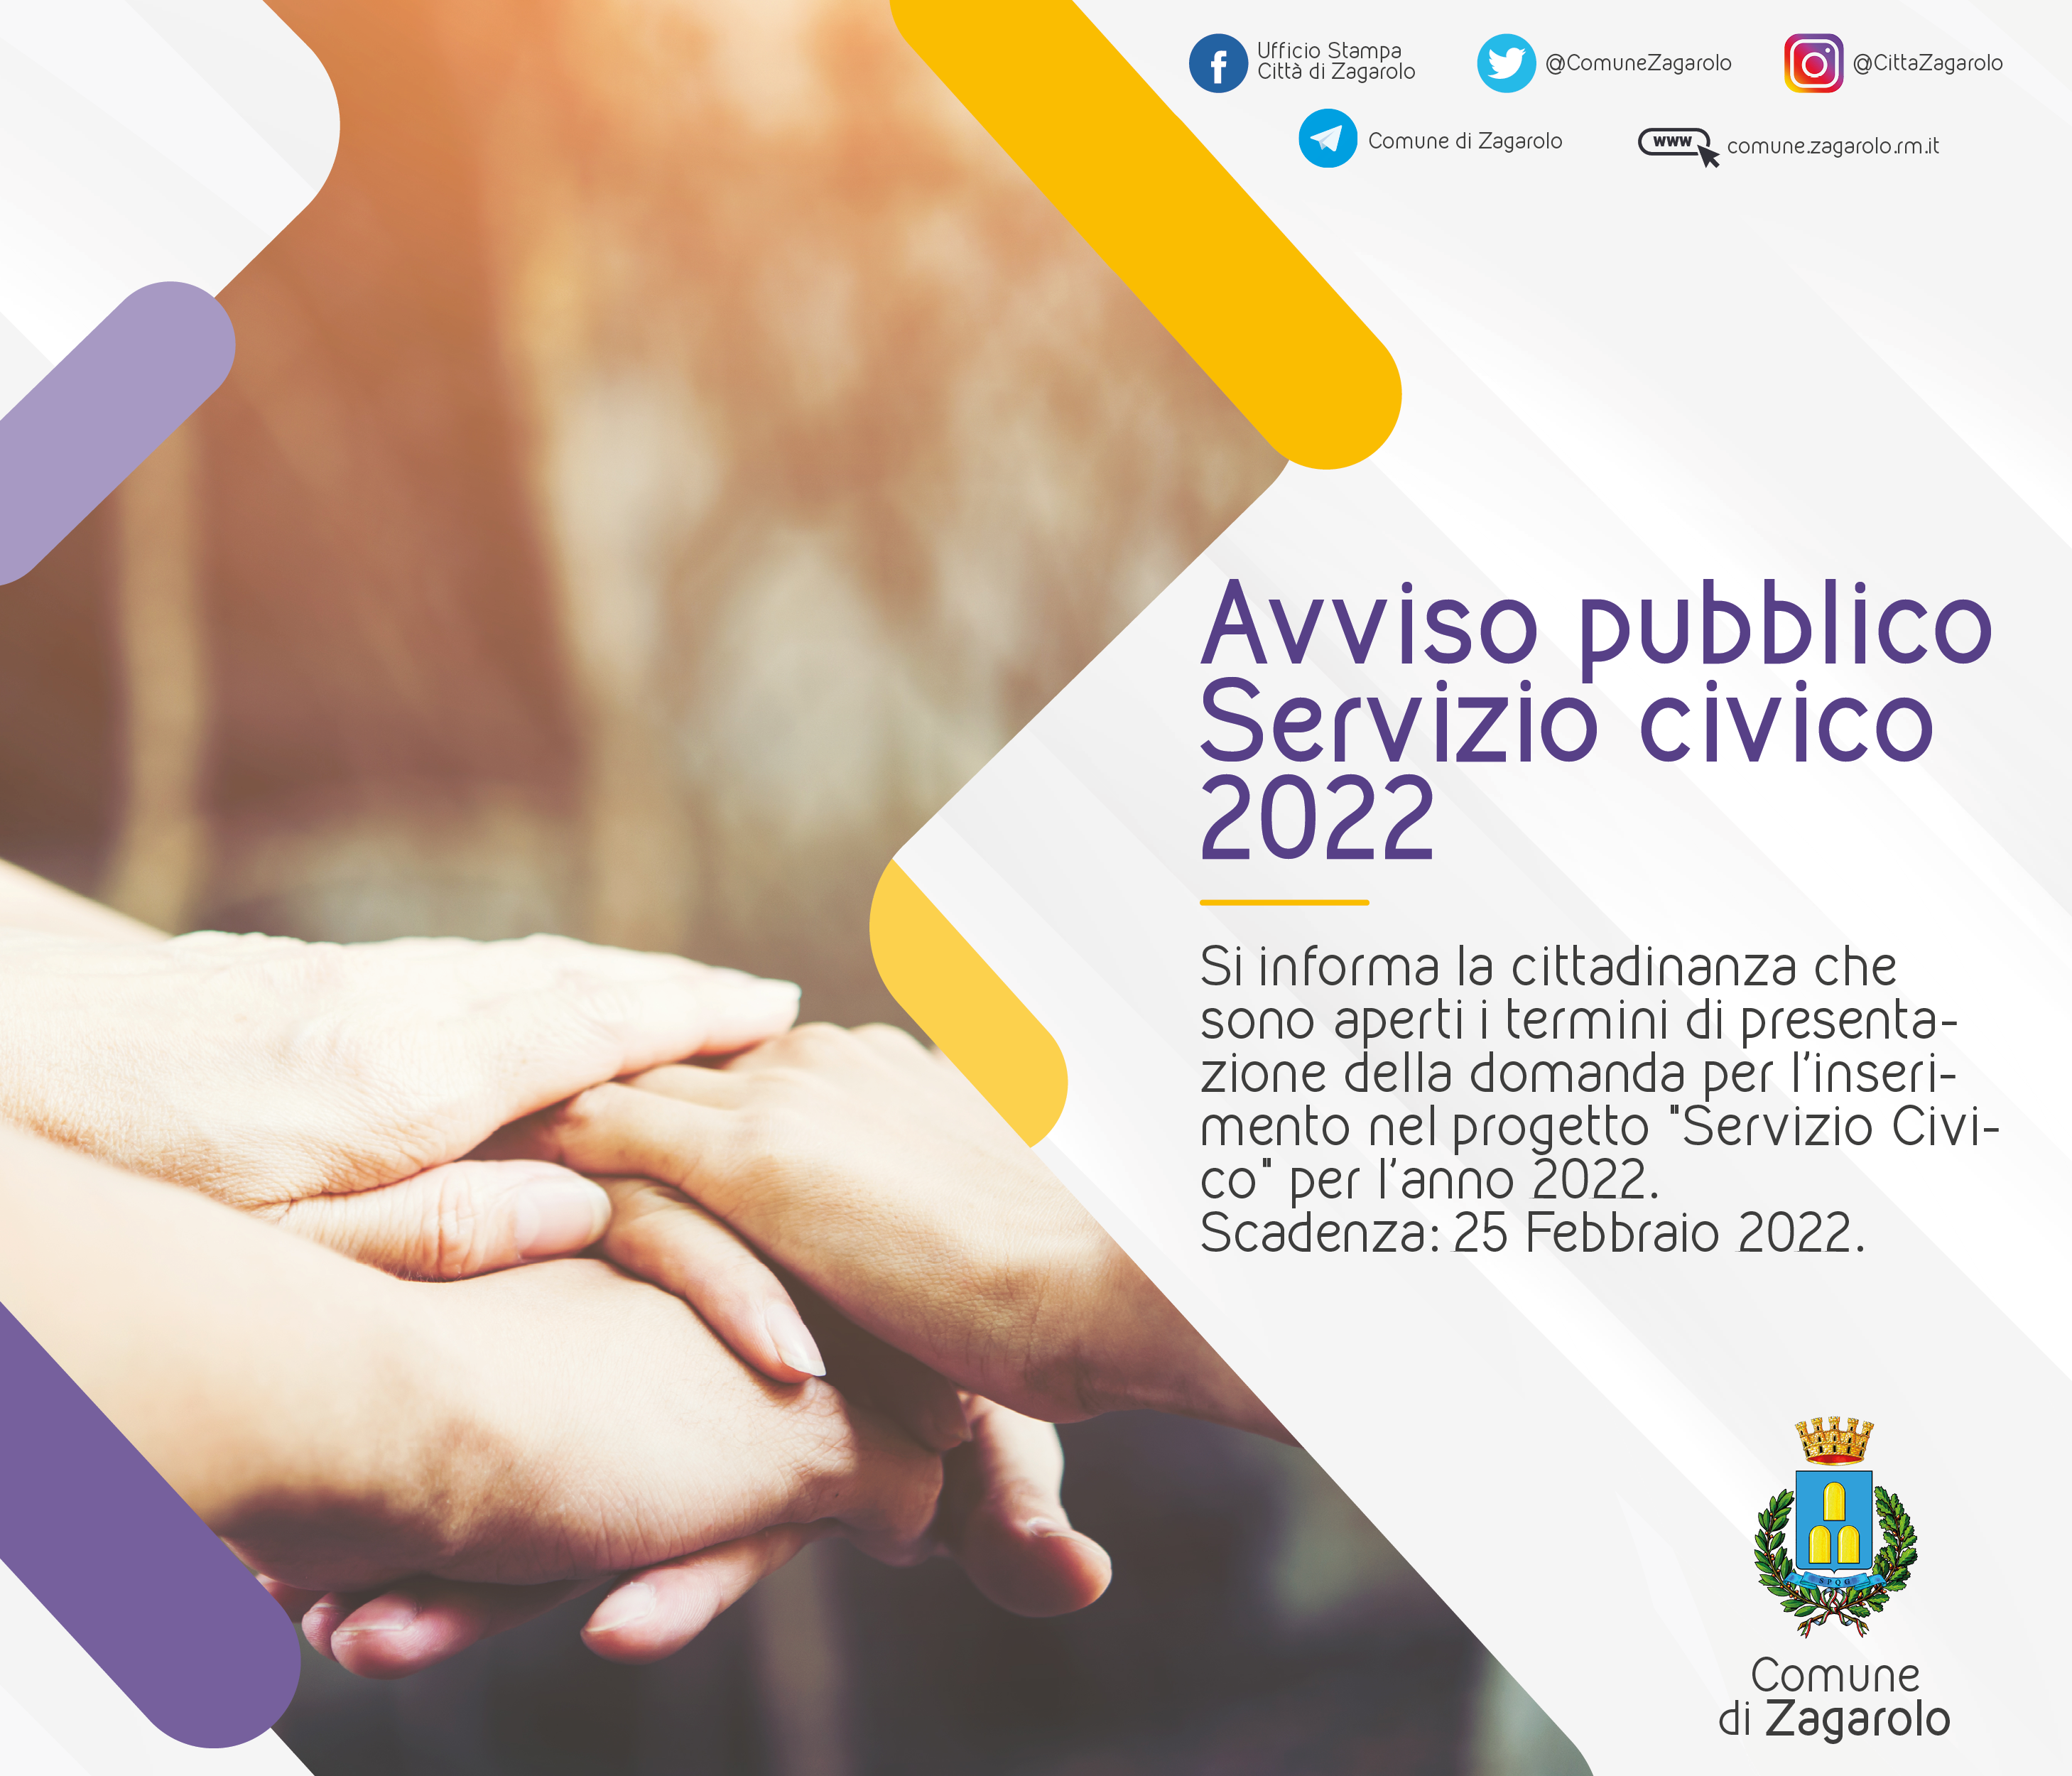 AVVISO PUBBLICO - SERVIZIO CIVICO NEL COMUNE DI ZAGAROLO - ANNO 2022